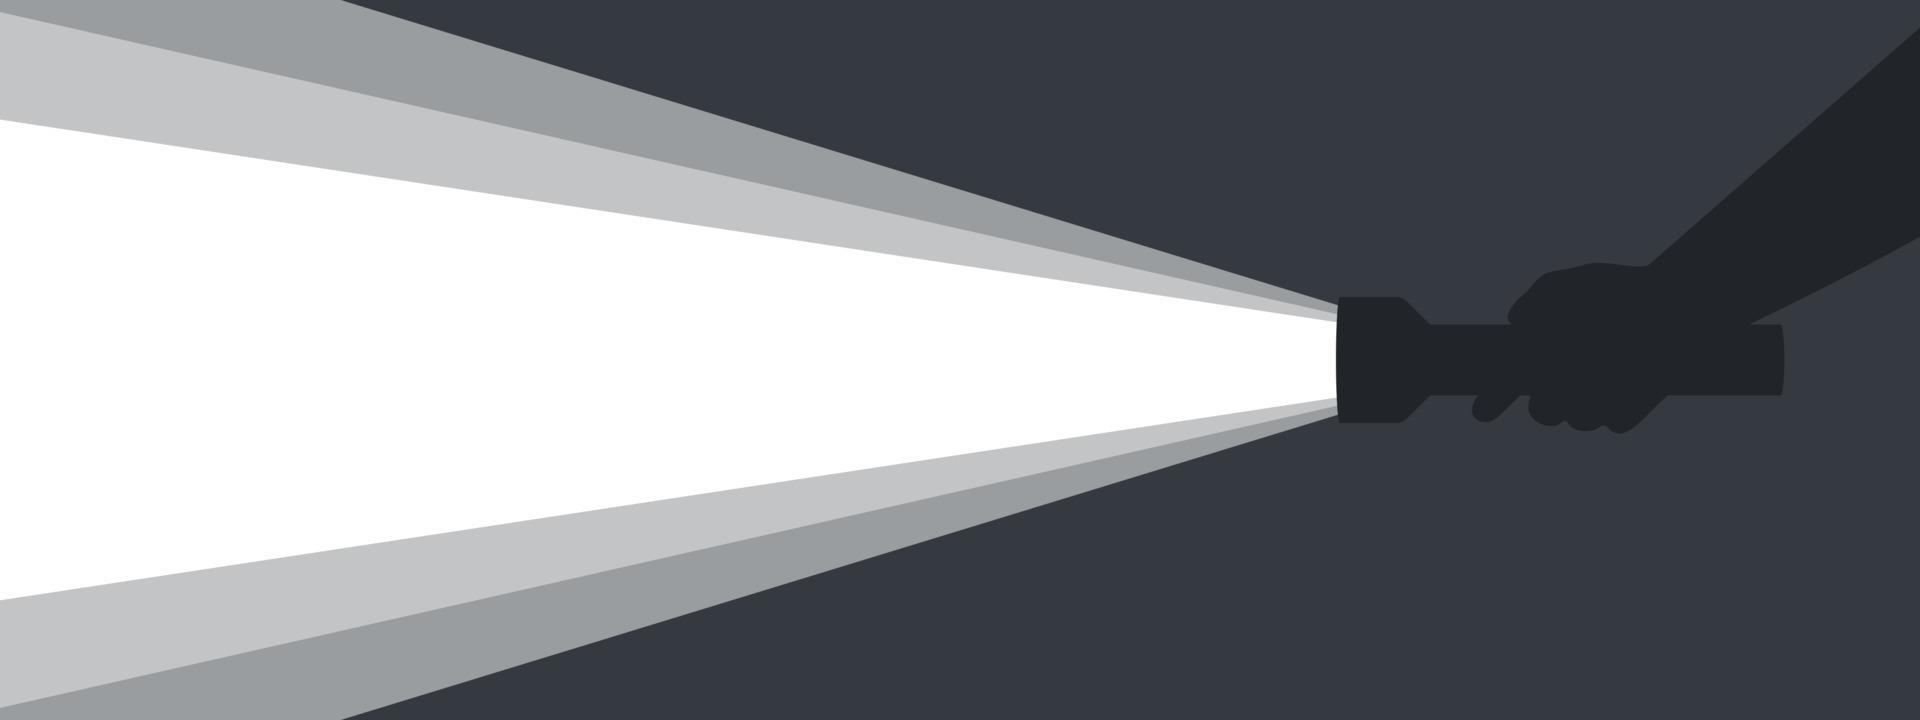 ficklampa i hand. bakgrund med en ficklampa för reklam. stråle av ljus från en ficklampa. vektor illustration